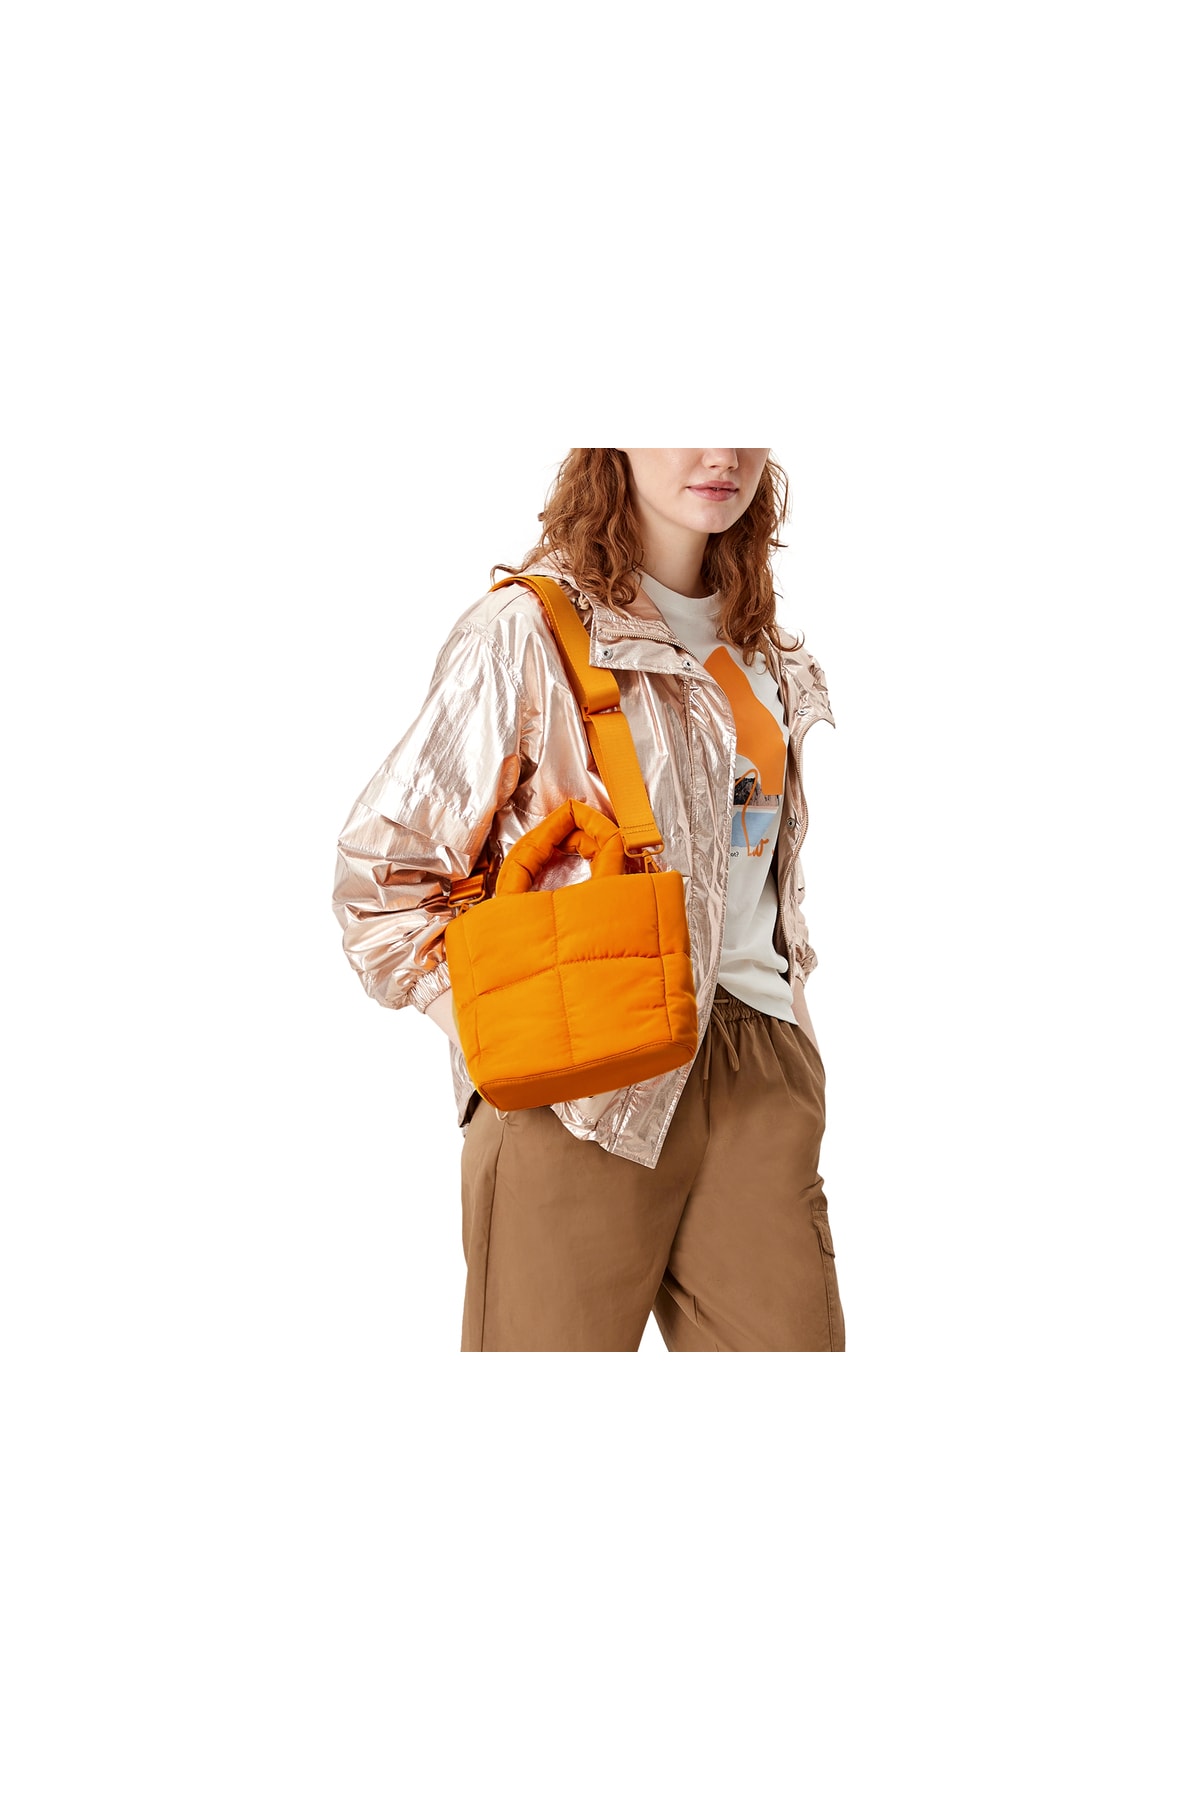 s.Oliver Handtasche Orange Strukturiert Fast ausverkauft